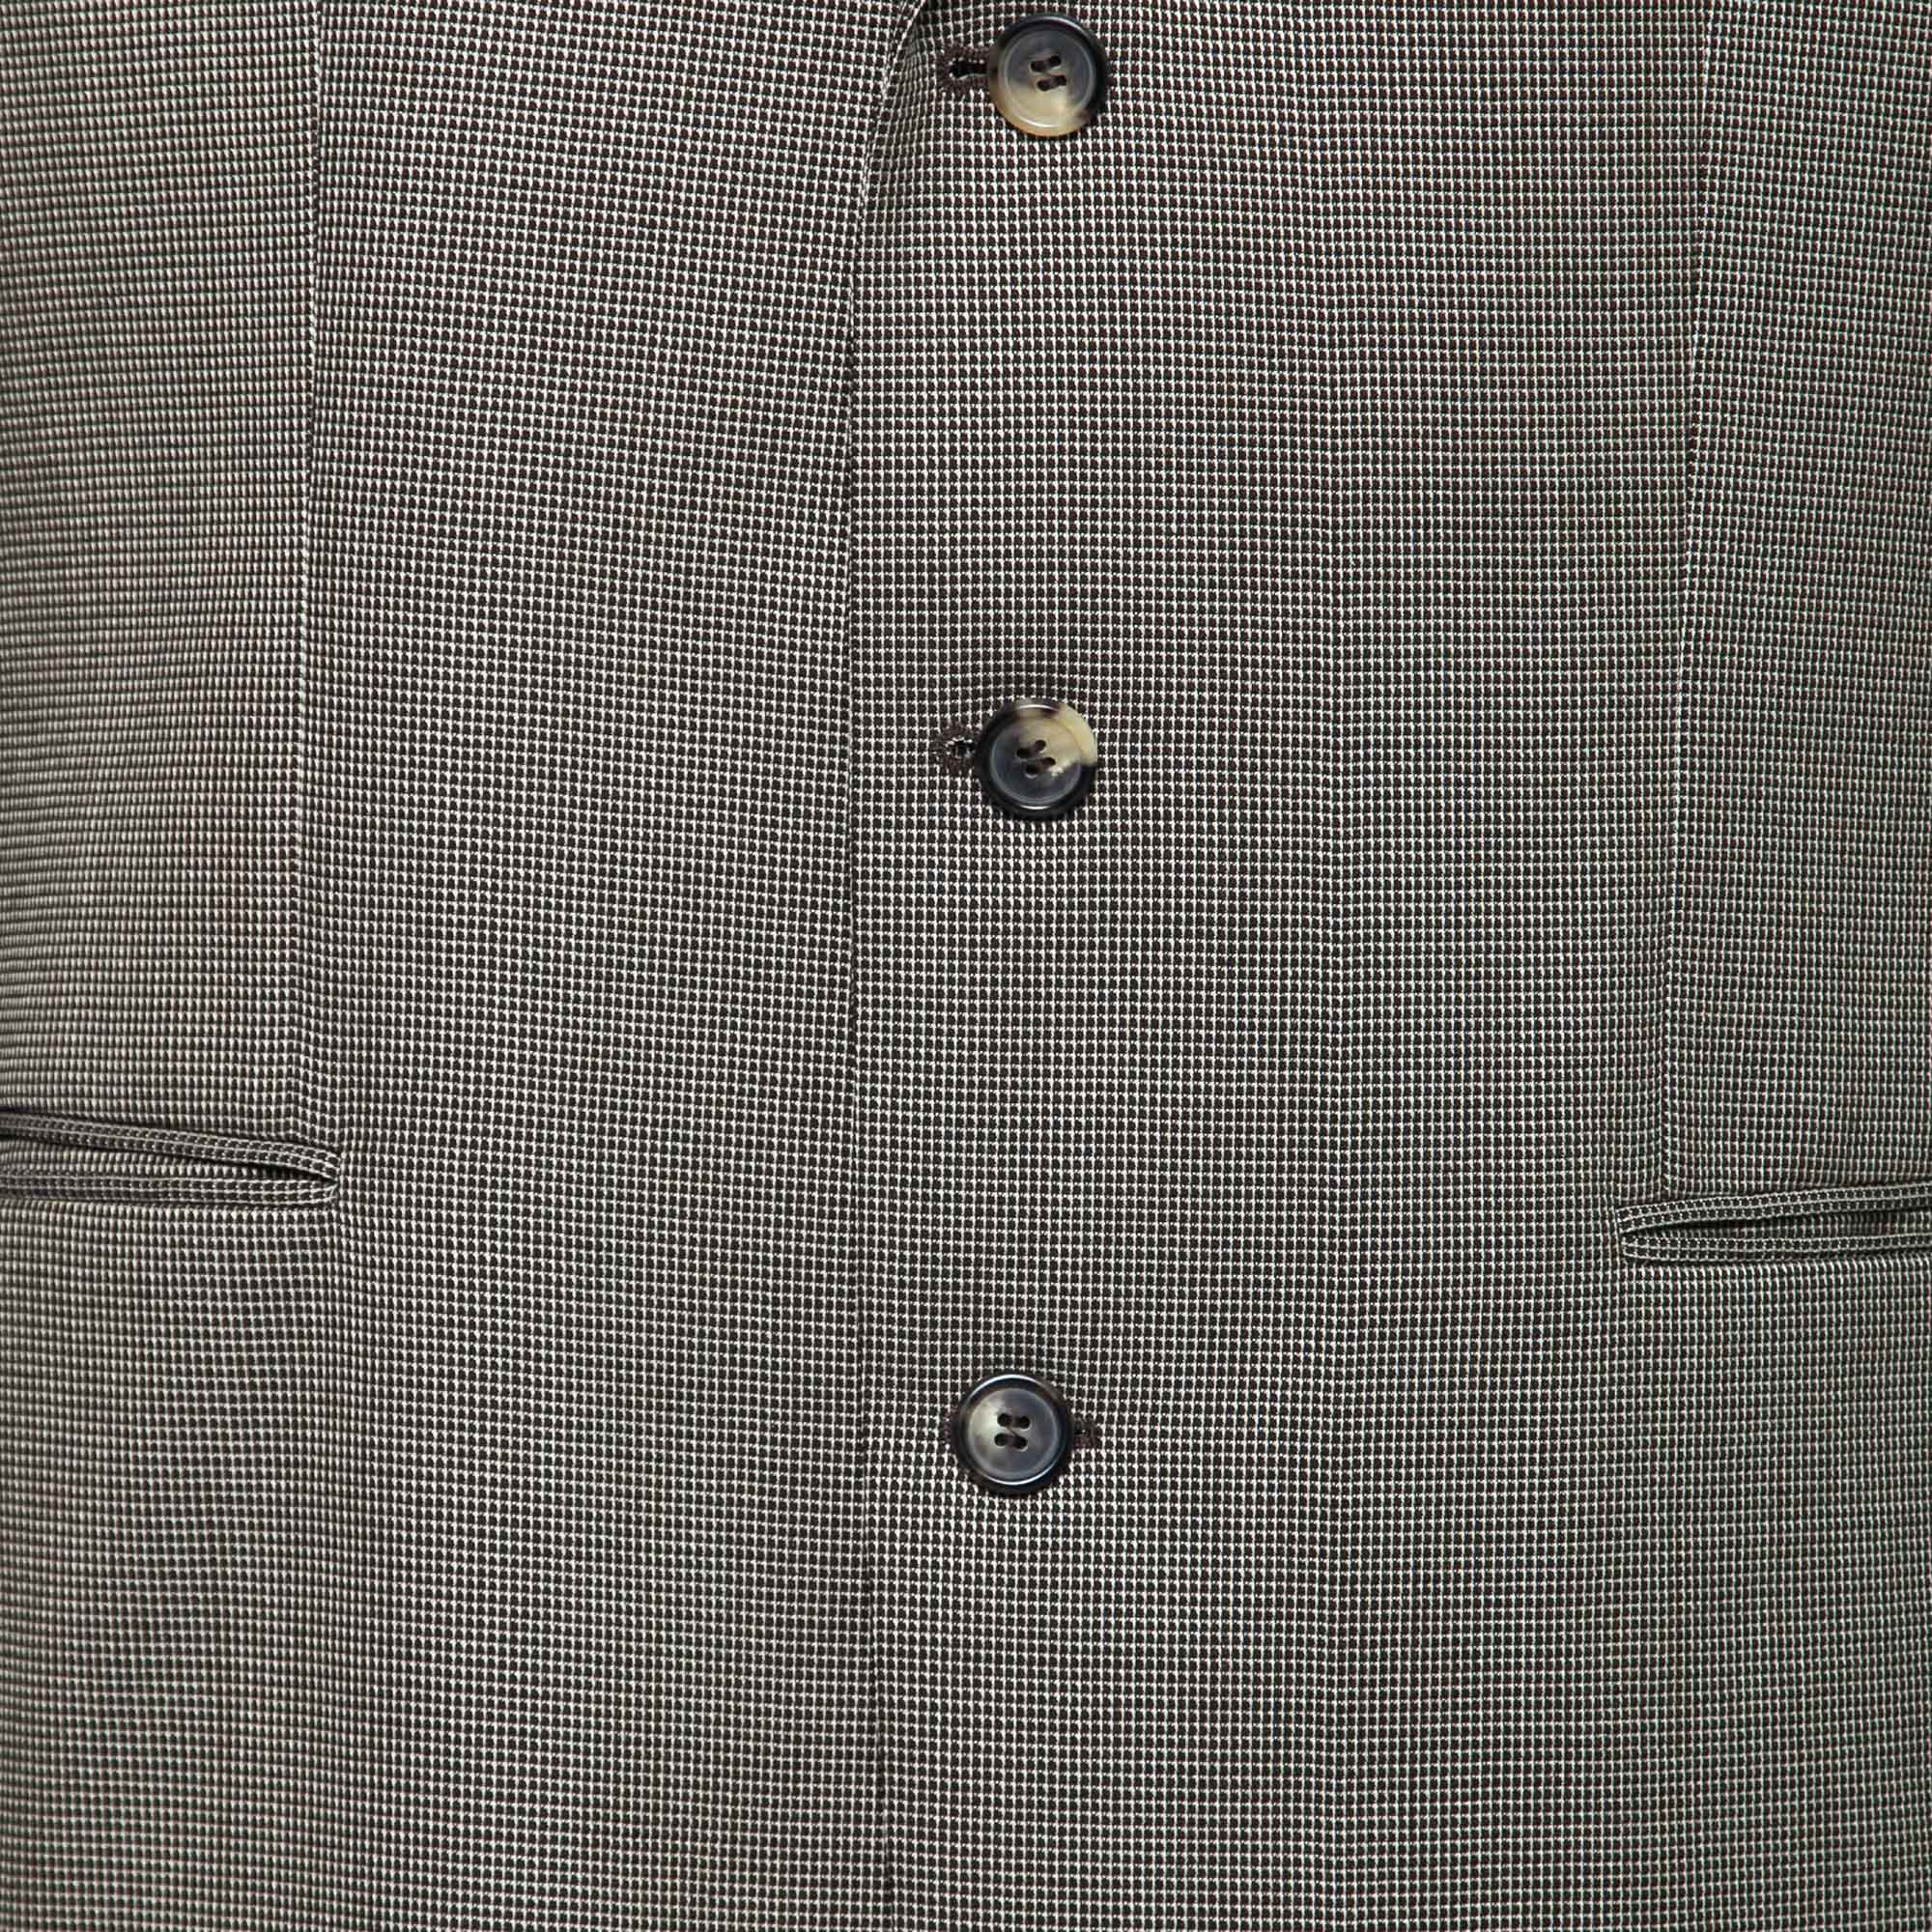 Boss By Hugo Boss Vintage Brown Wool DaVinci Blazer/Hooker Trousers Suit XL